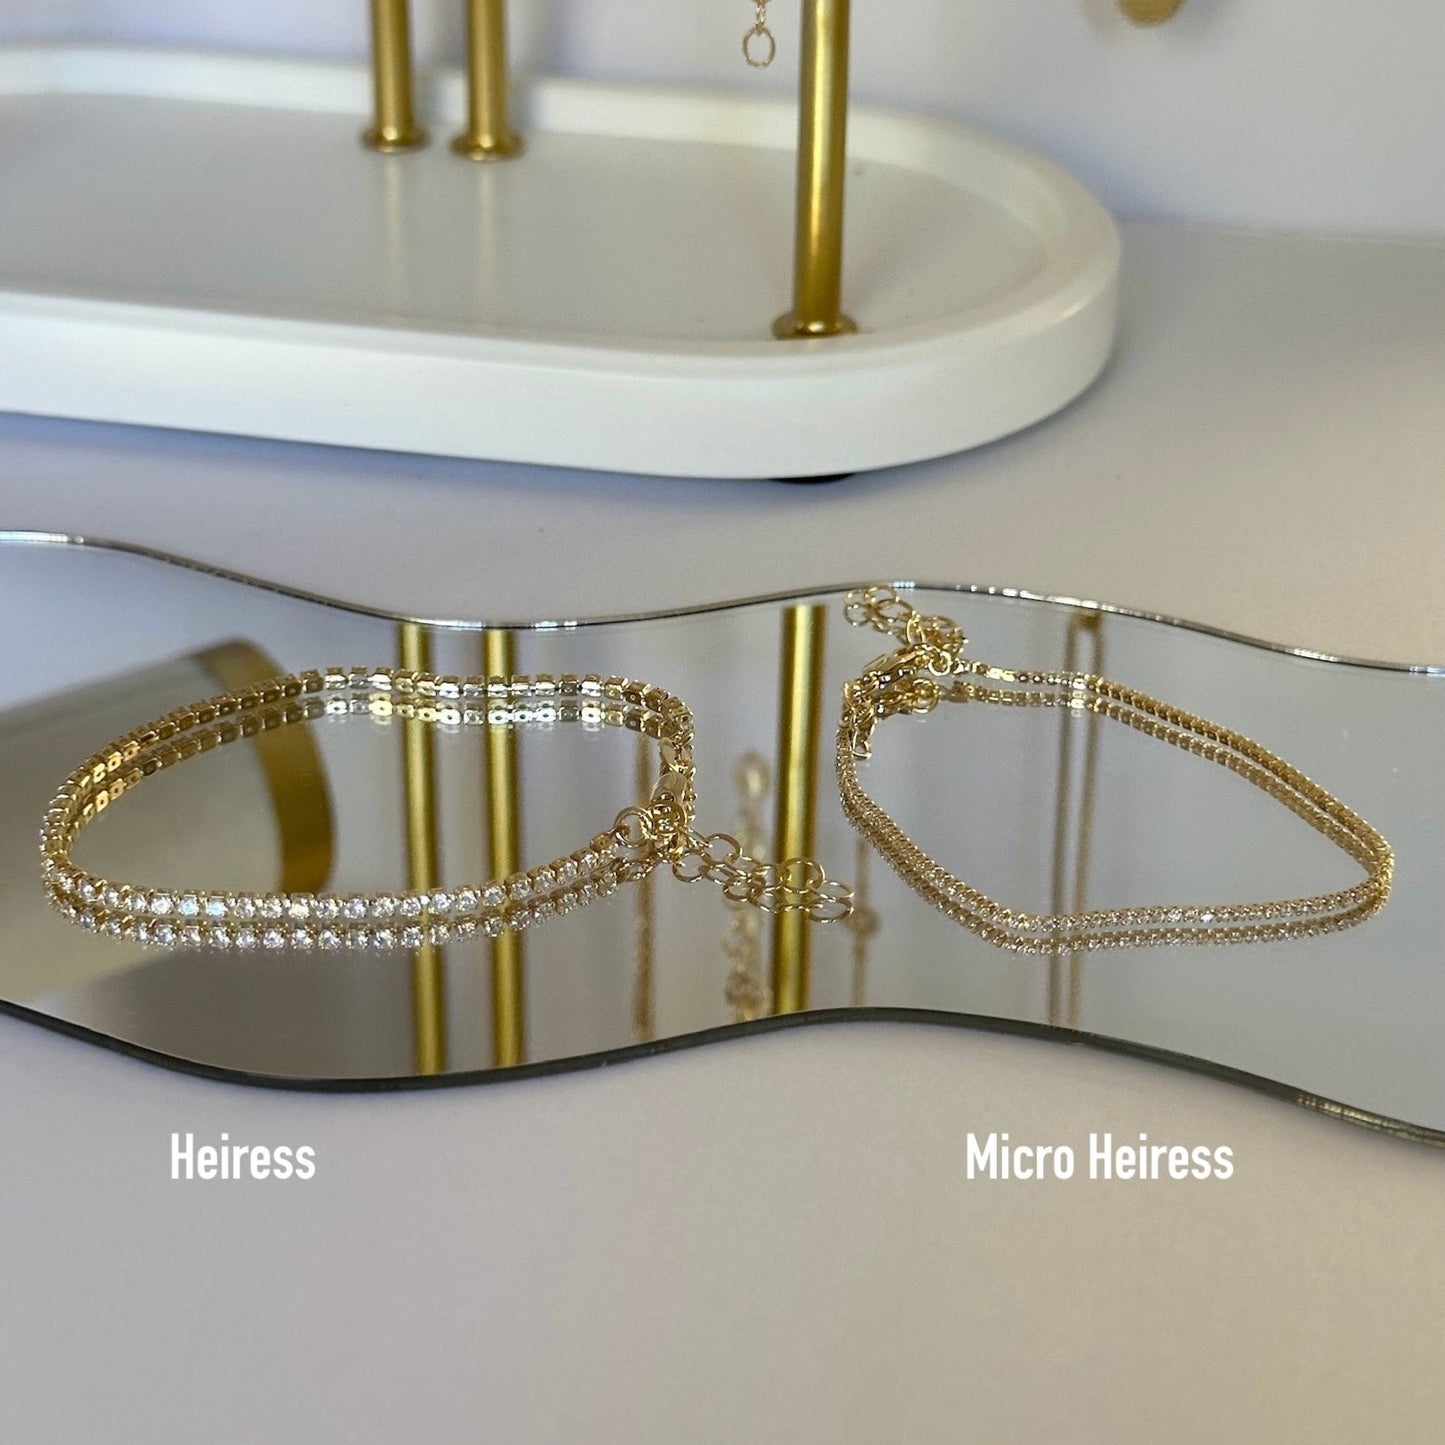 Micro Hereiss Bracelet